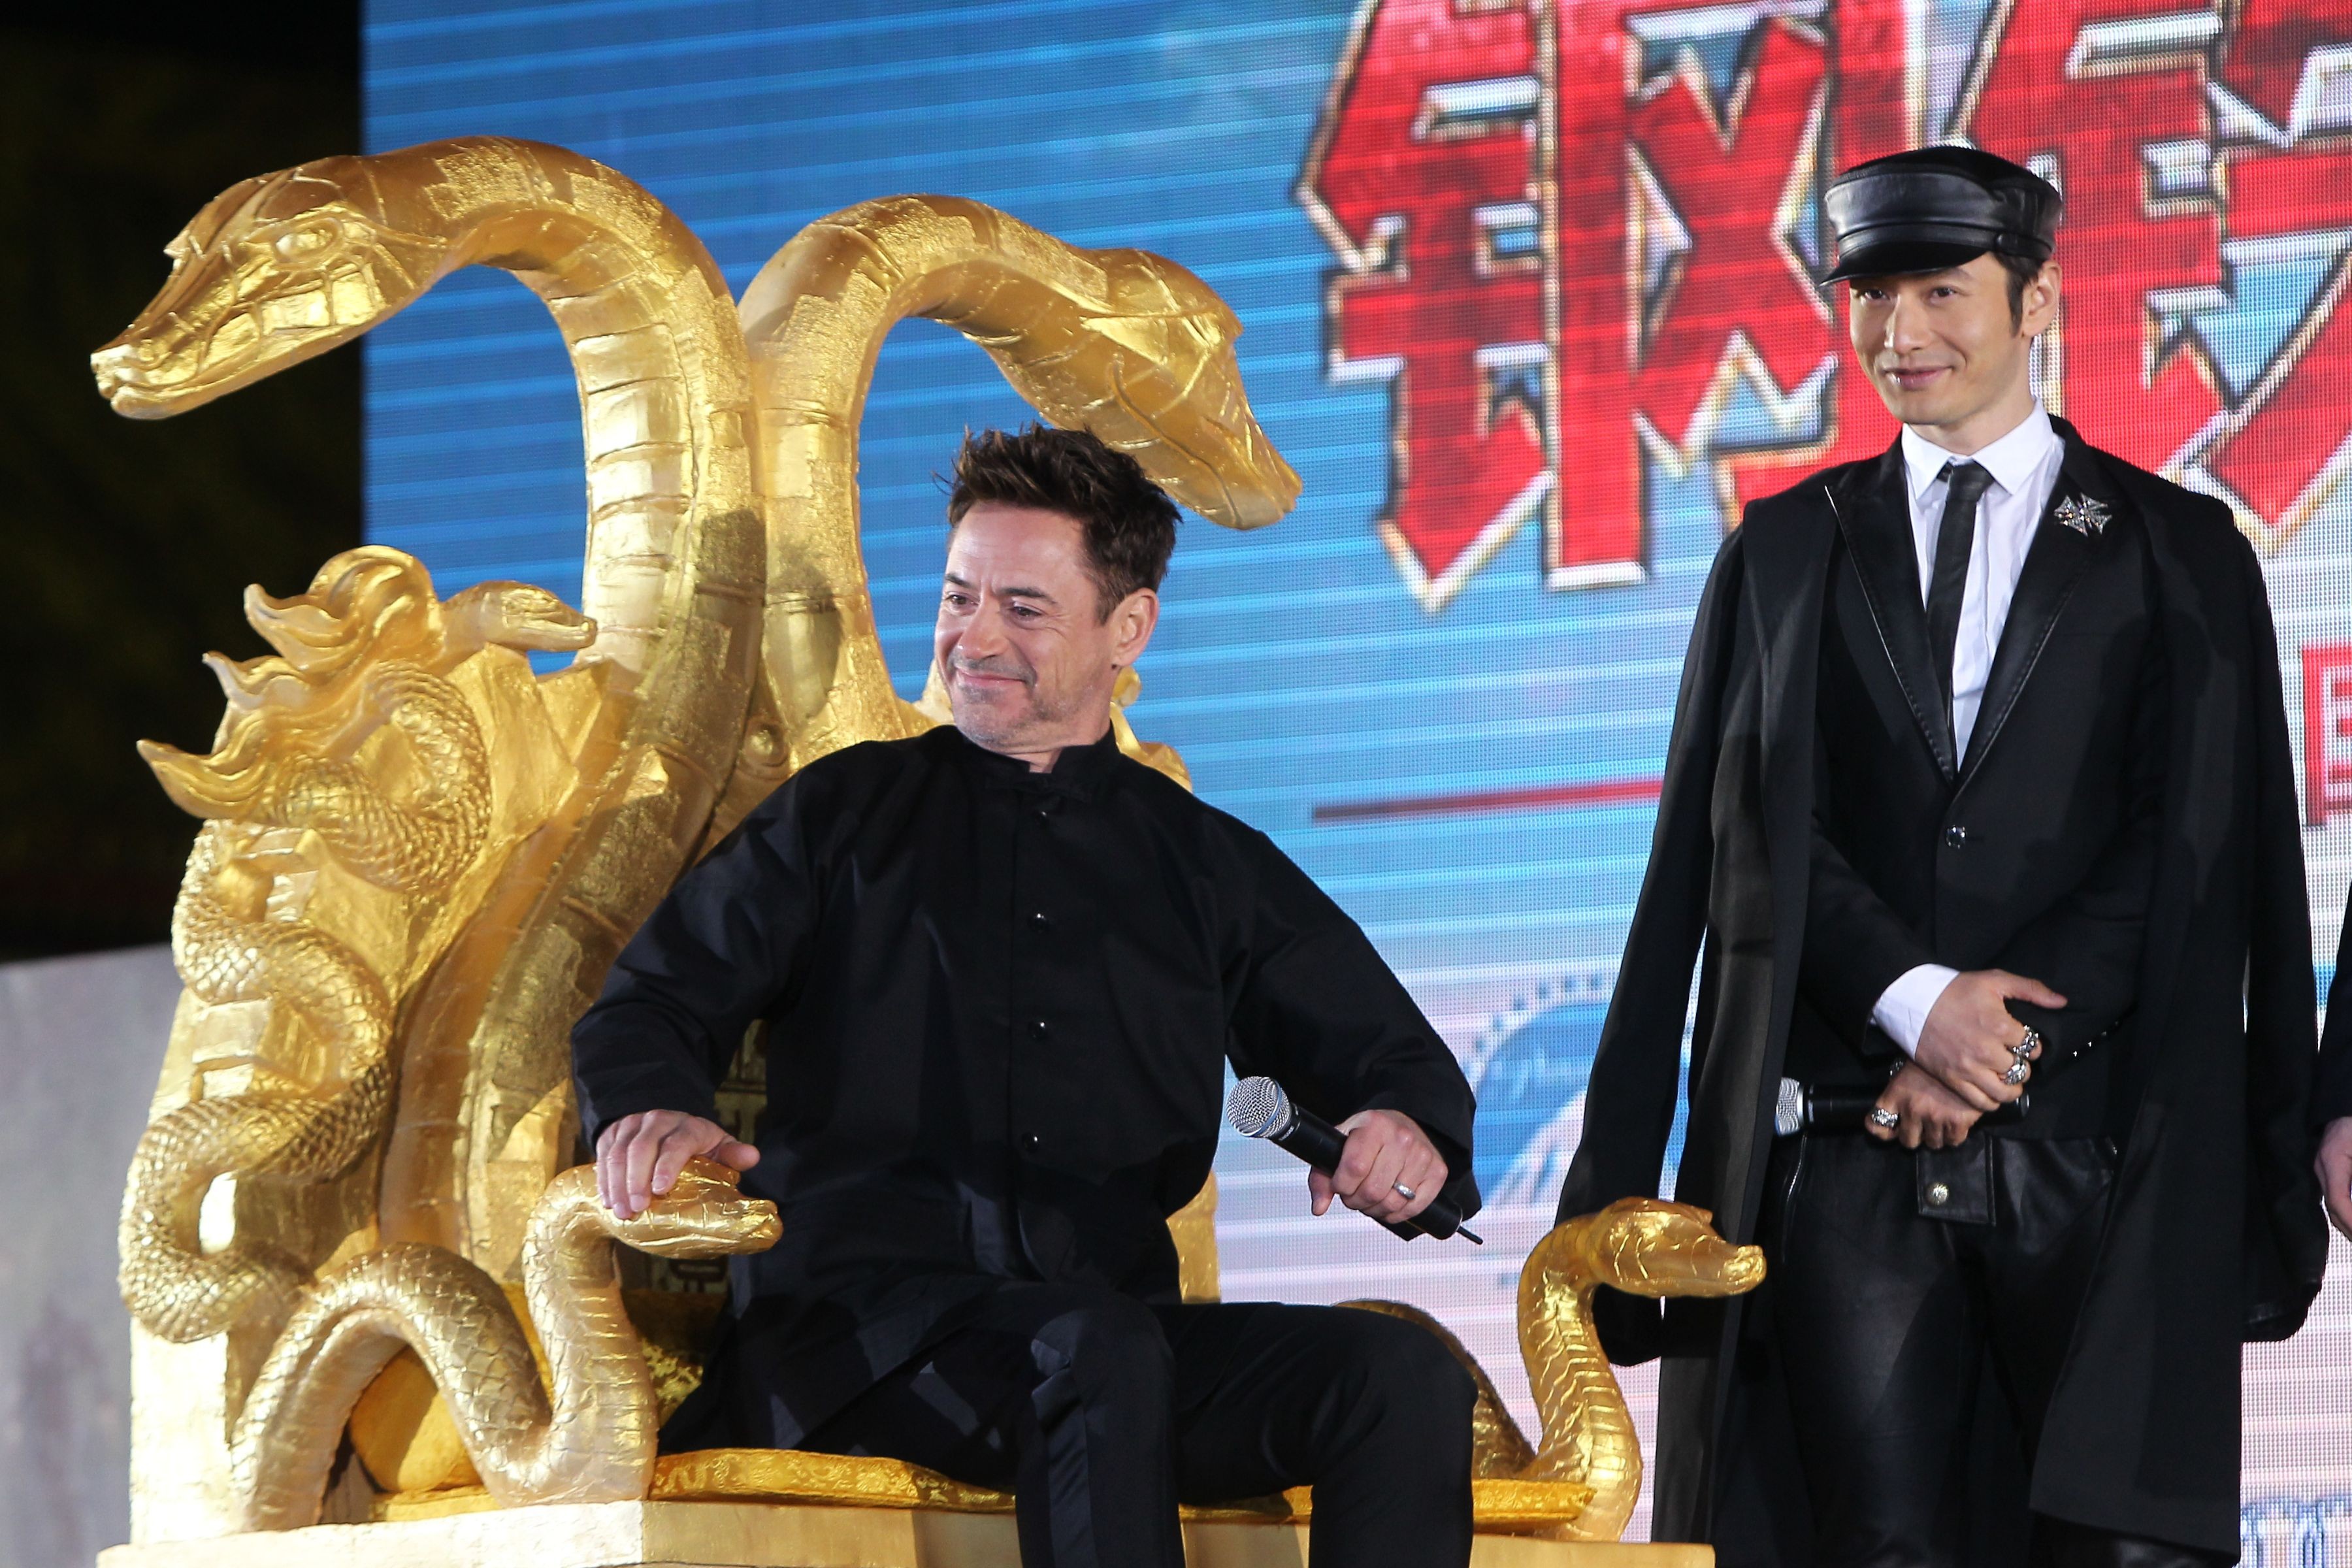  Robert Downey Jr. na estreia chinesa de 'Homem de Ferro 3'; filme teve versão exclusiva para a China  (Foto: Visual China Group via Getty Images)